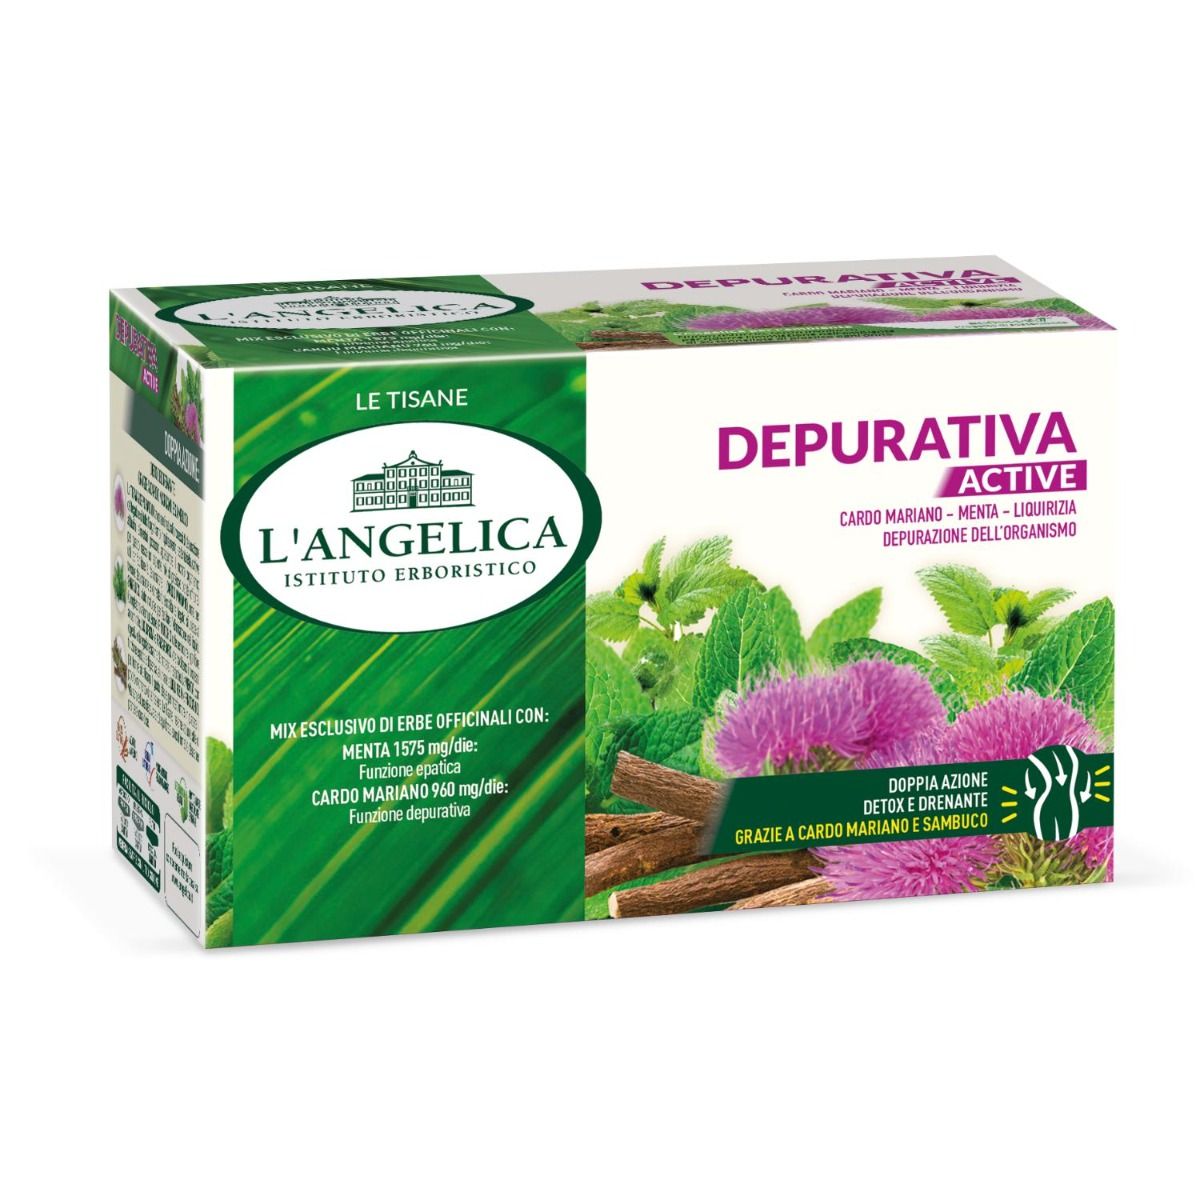 Active Depurative Herbal Tea